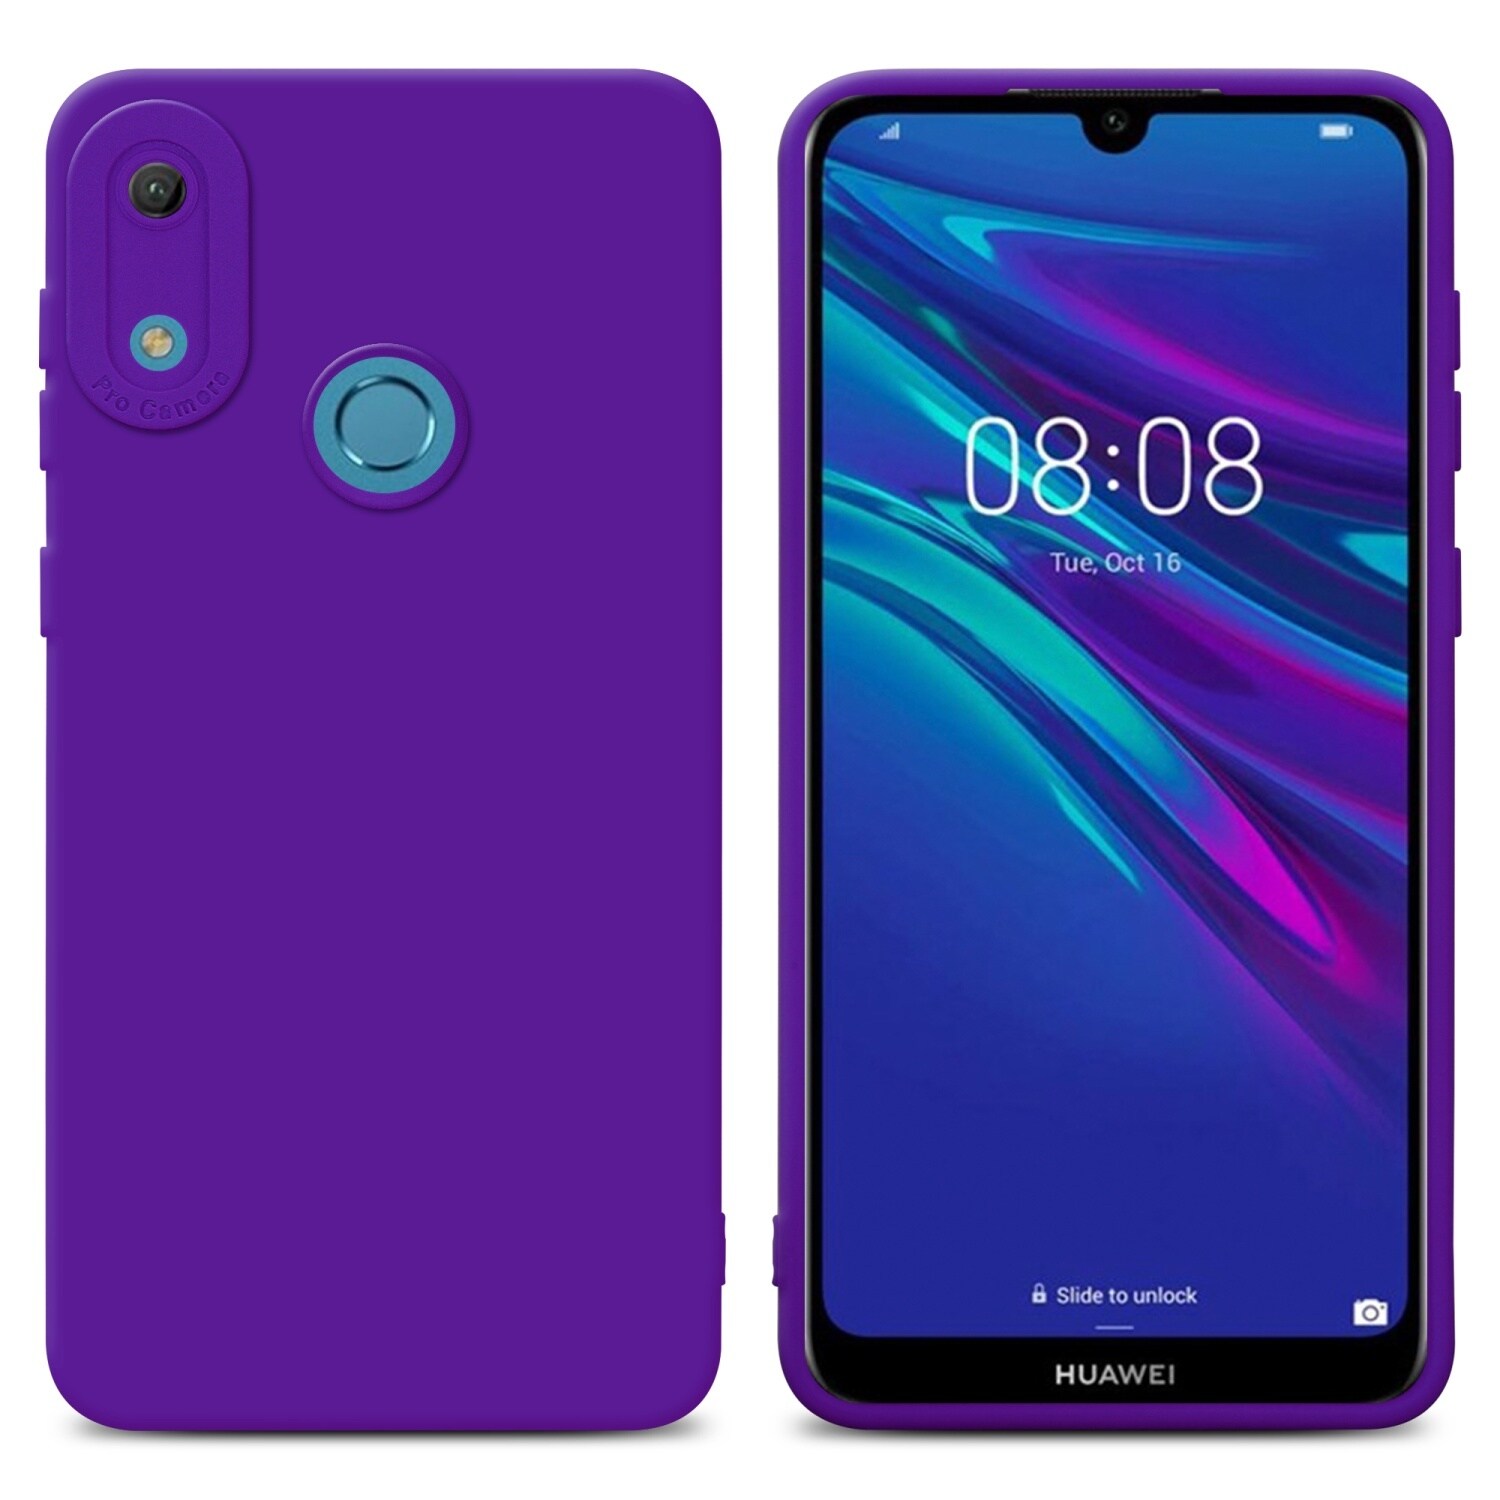 Huawei Y6 2019 silikondeksel case (lilla) - Elkjøp